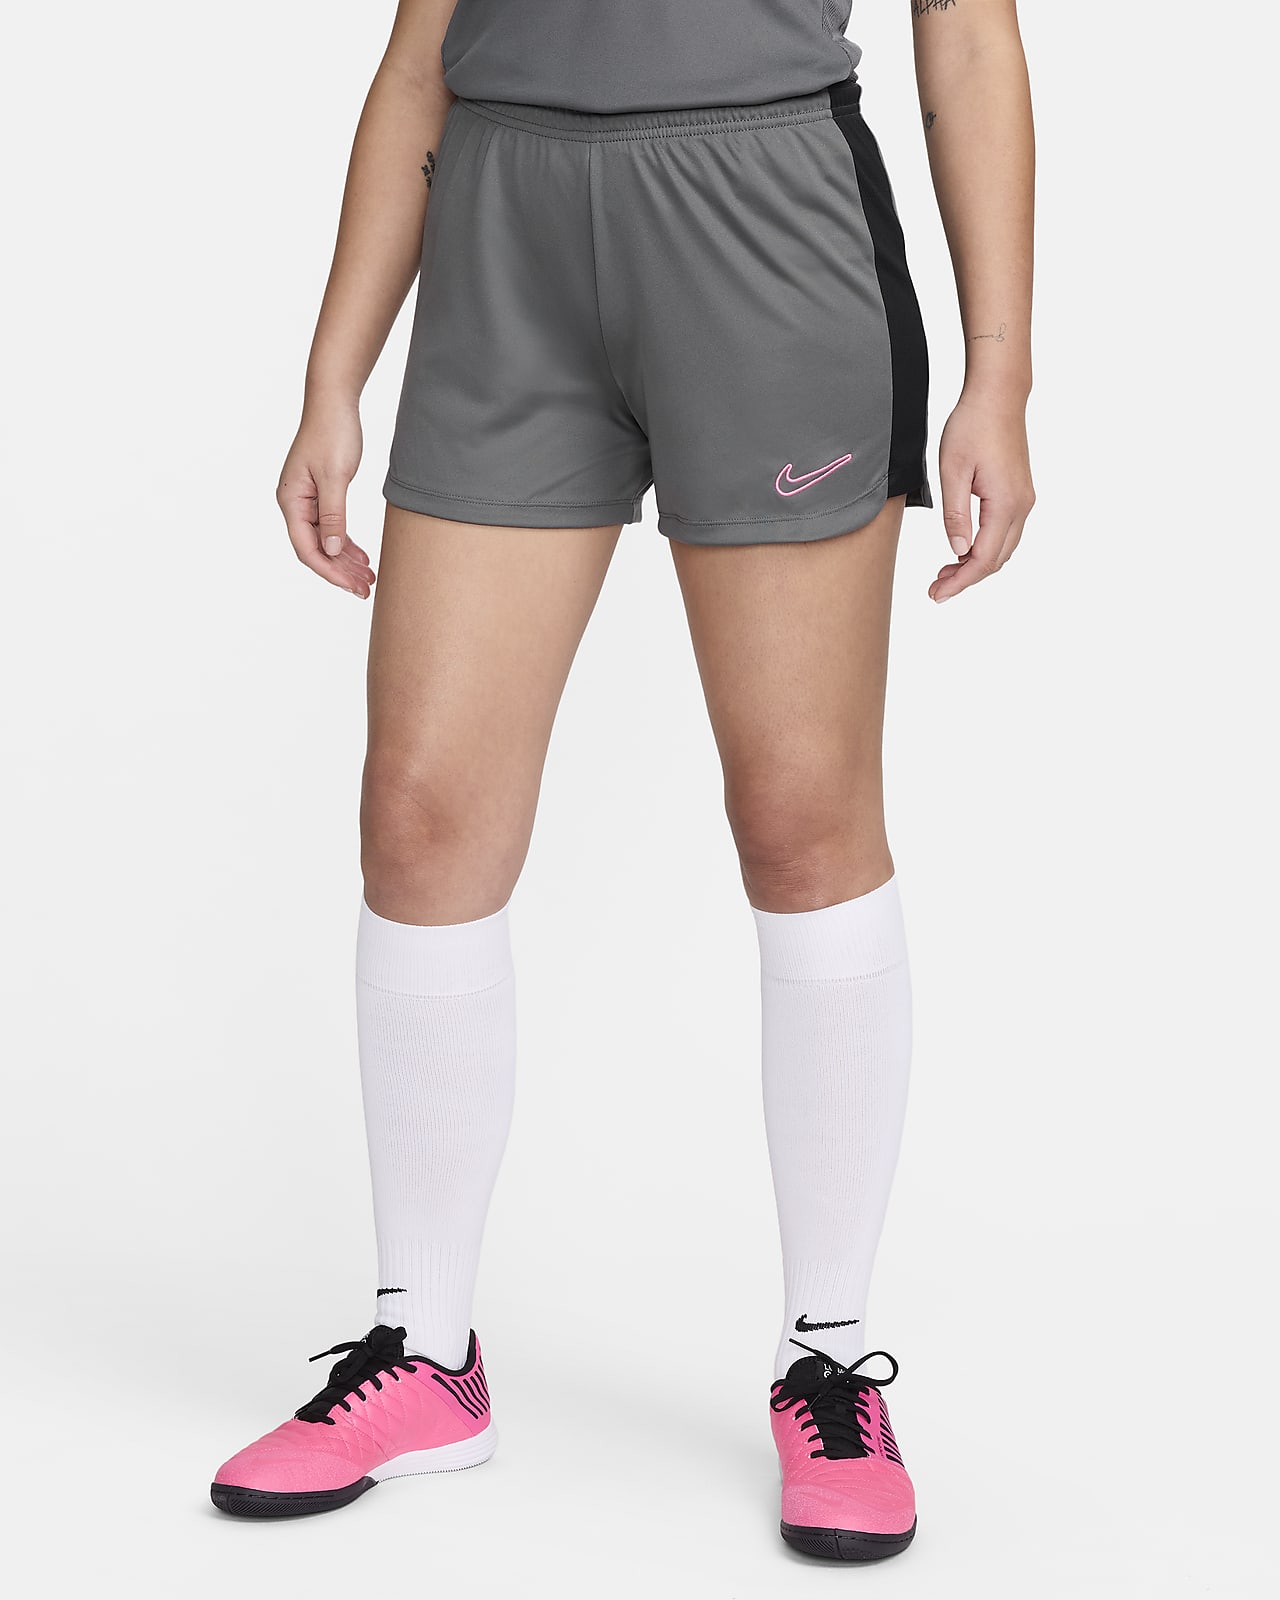 Women's Shorts. Nike DK